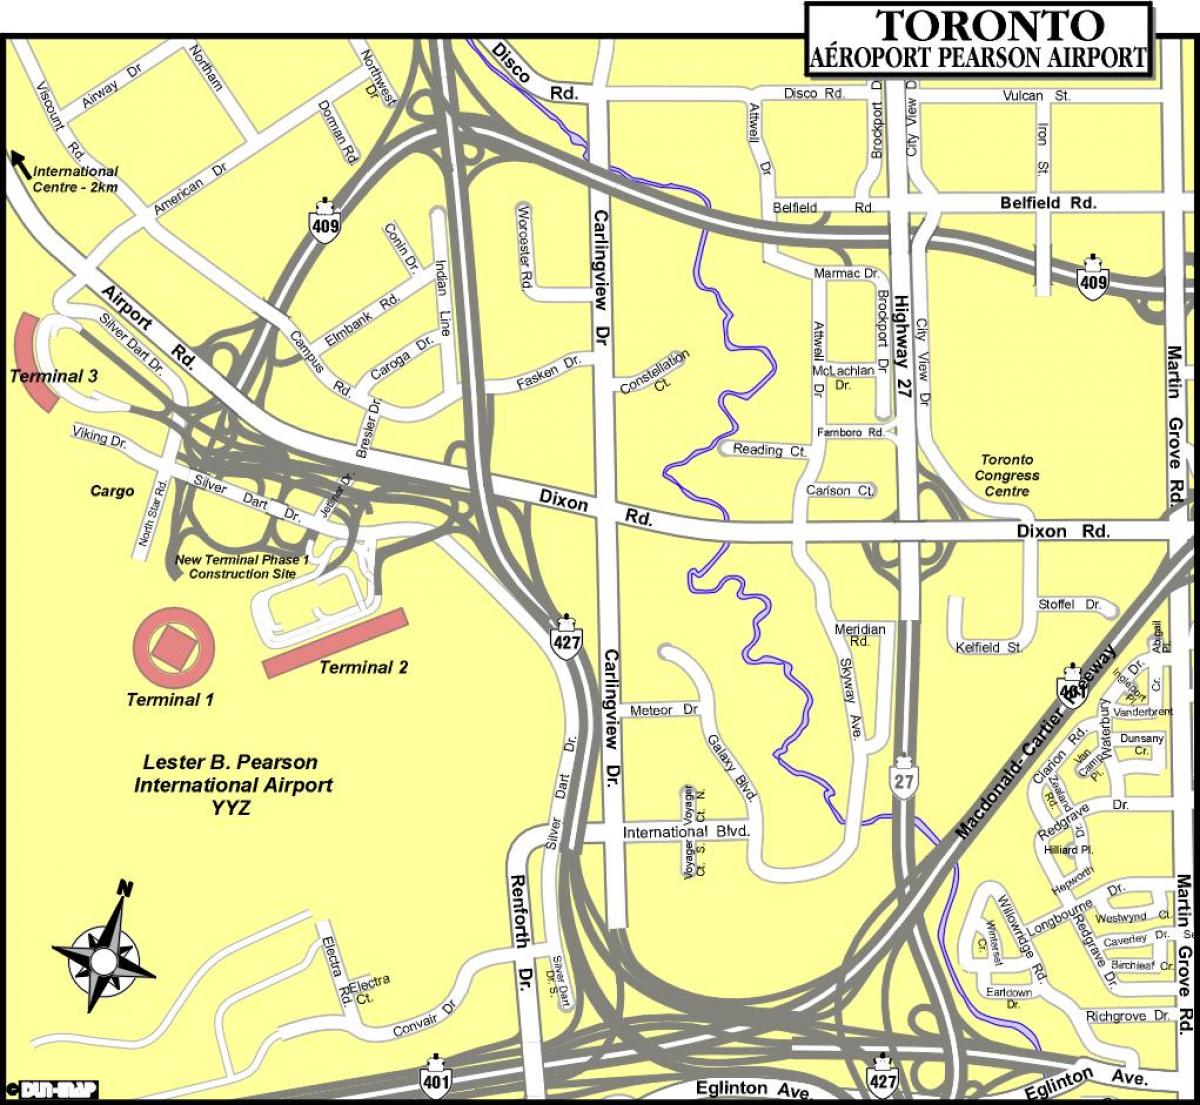 Kort af Toronto flugvellir